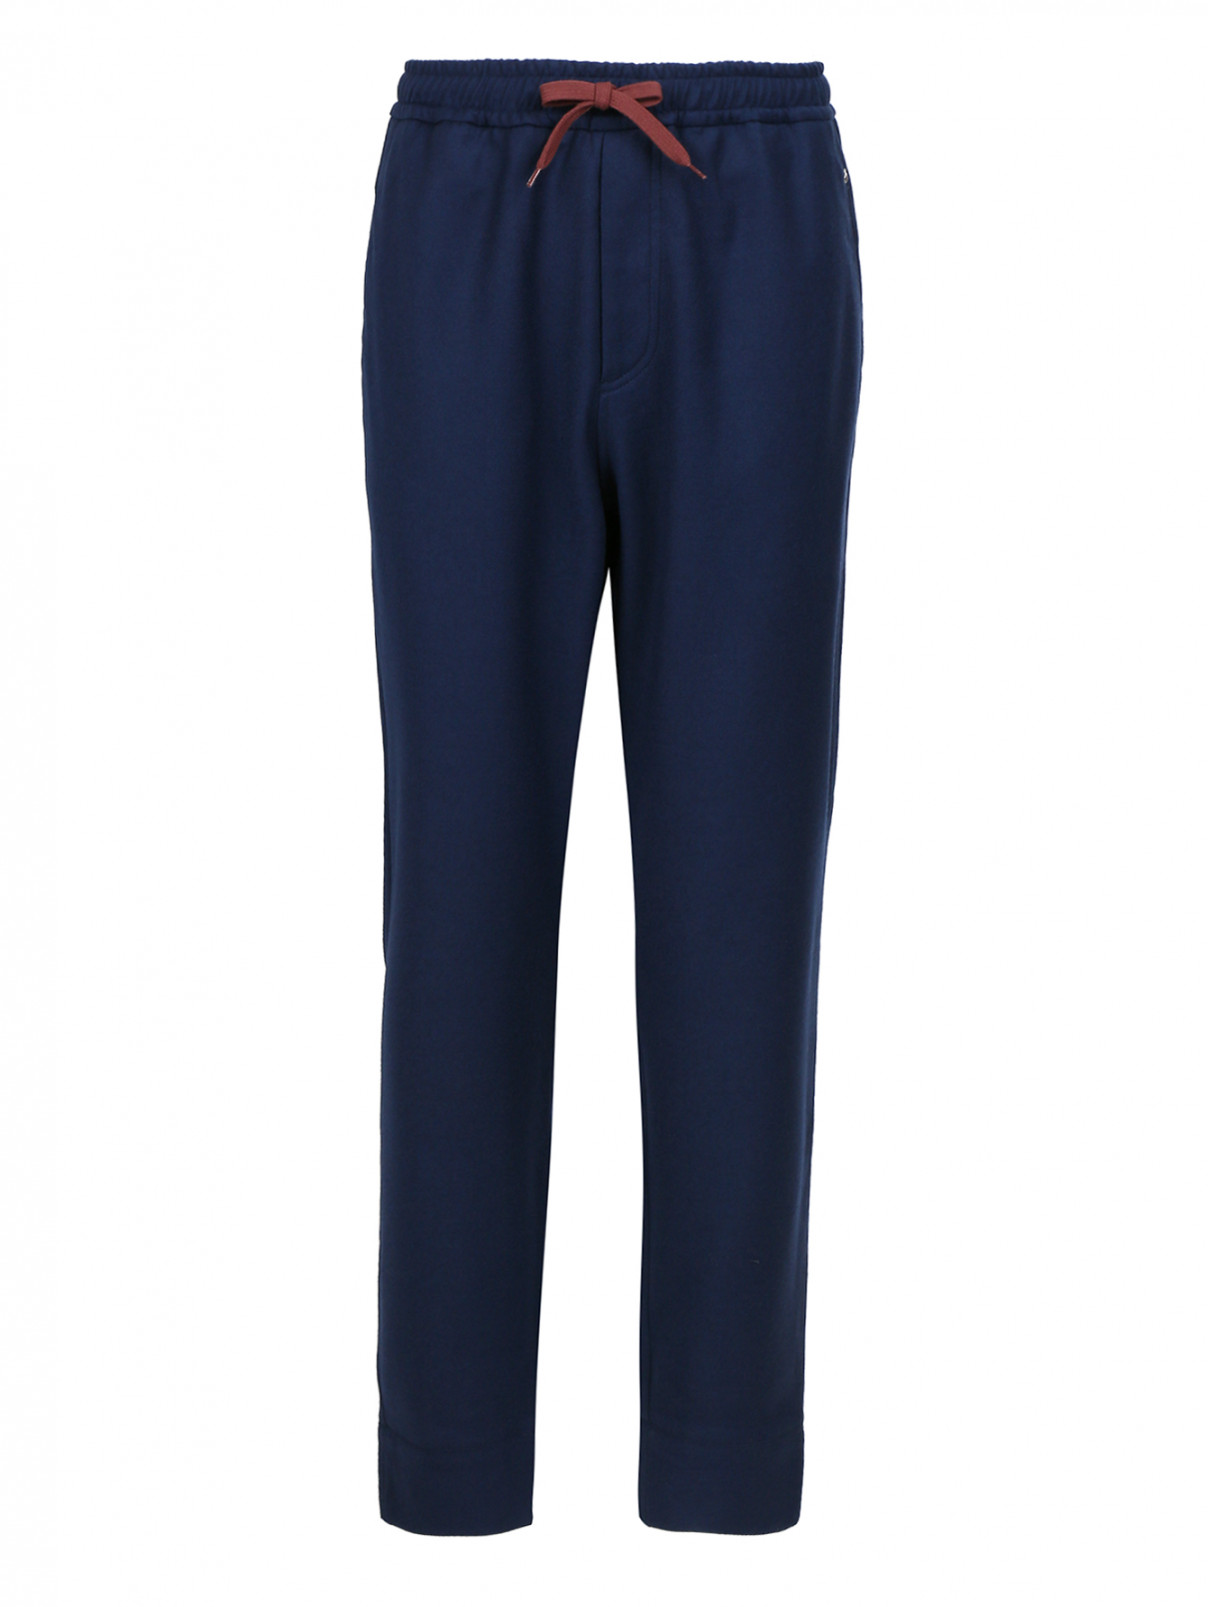 Шерстяные брюки на завязках с резинкой на щиколотке BOSCO  –  Общий вид  – Цвет:  Синий